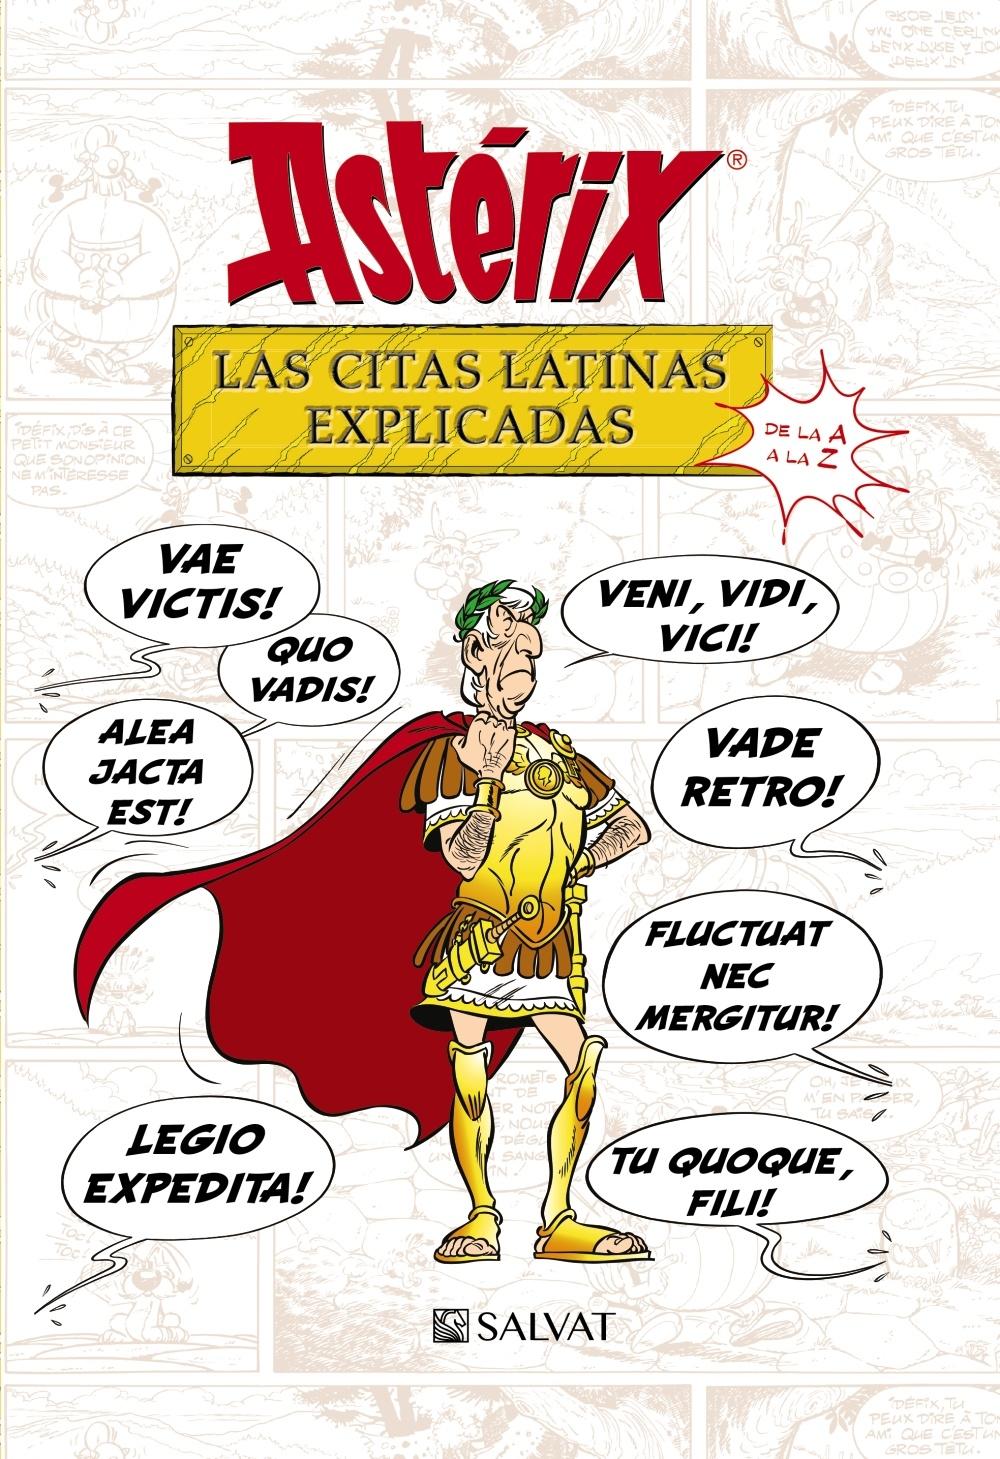 Astérix. Las citas latinas explicadas "De la A a la Z". 